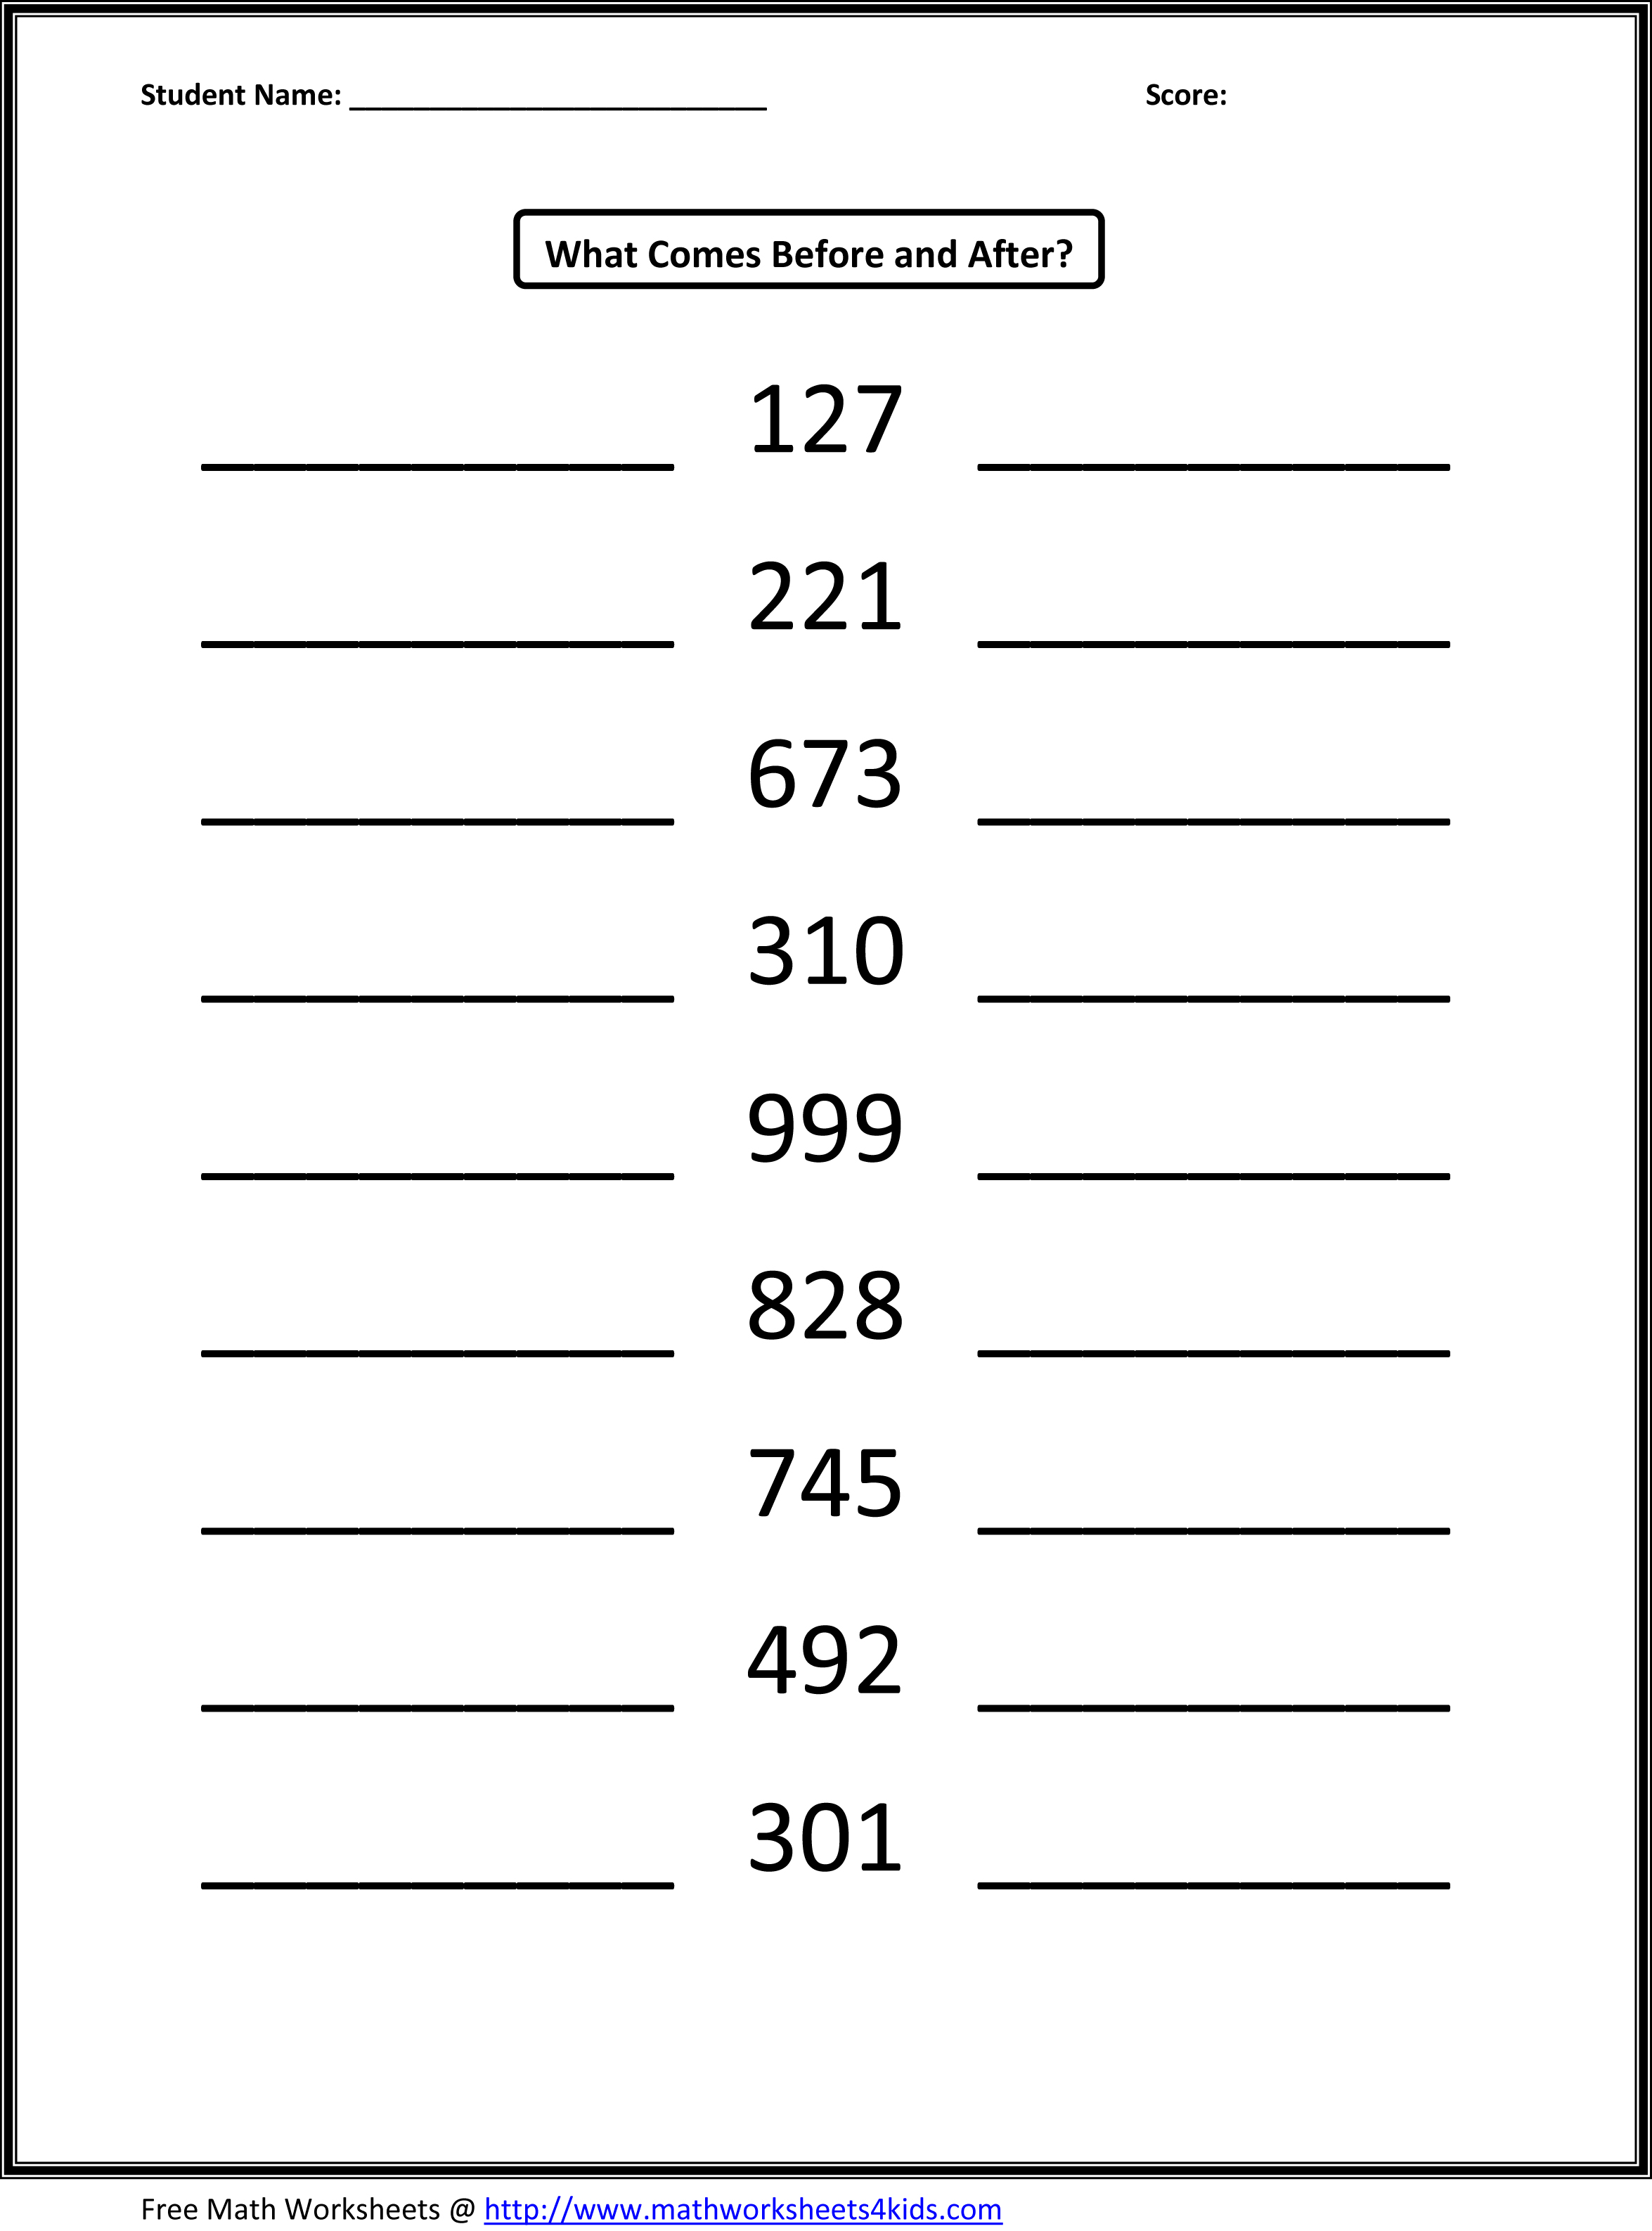 13 Best Images Of Numbers 10 20 Worksheets Numbers 10 20 Printable Worksheets Blank Number